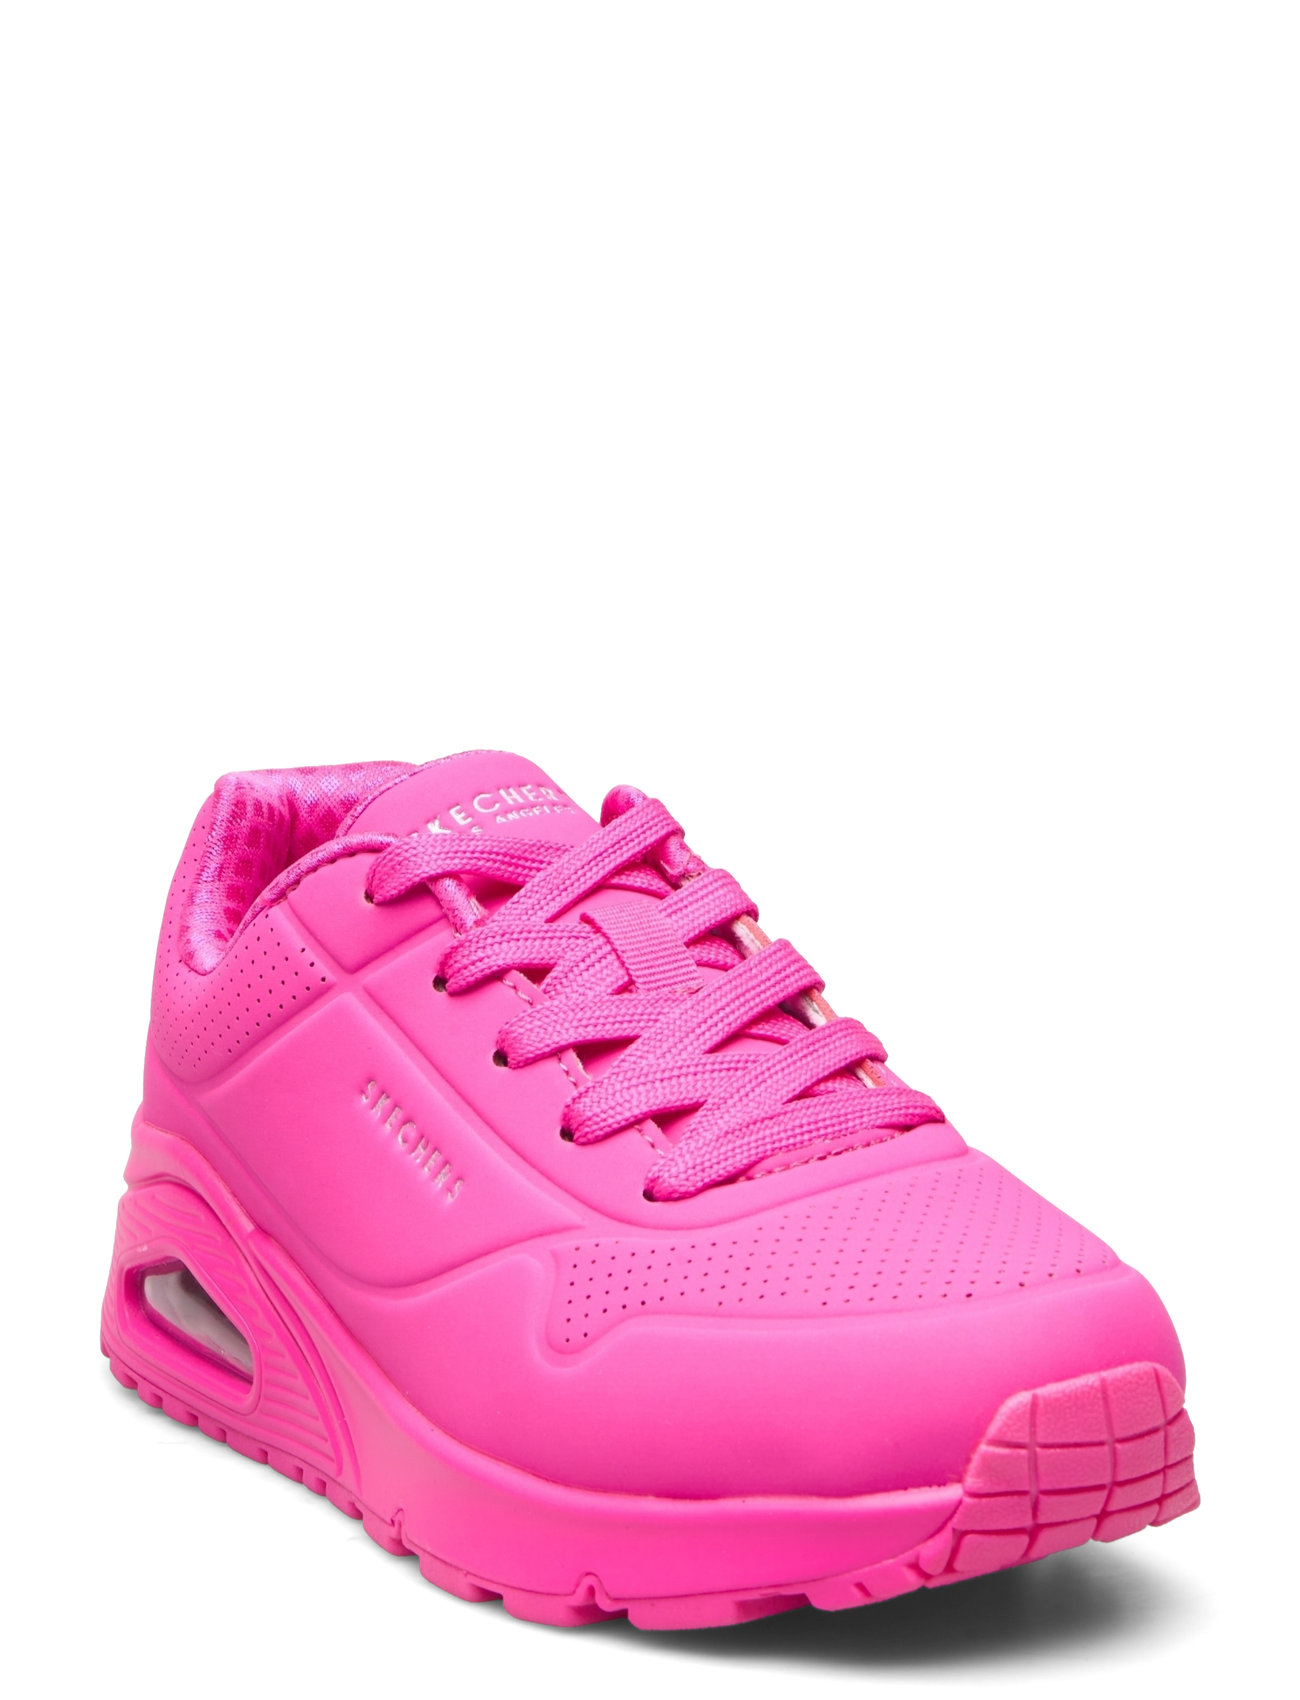 Girls Uno Gen1 - Neon Glow Shoes Sports Shoes Running-training Shoes Pink Skechers